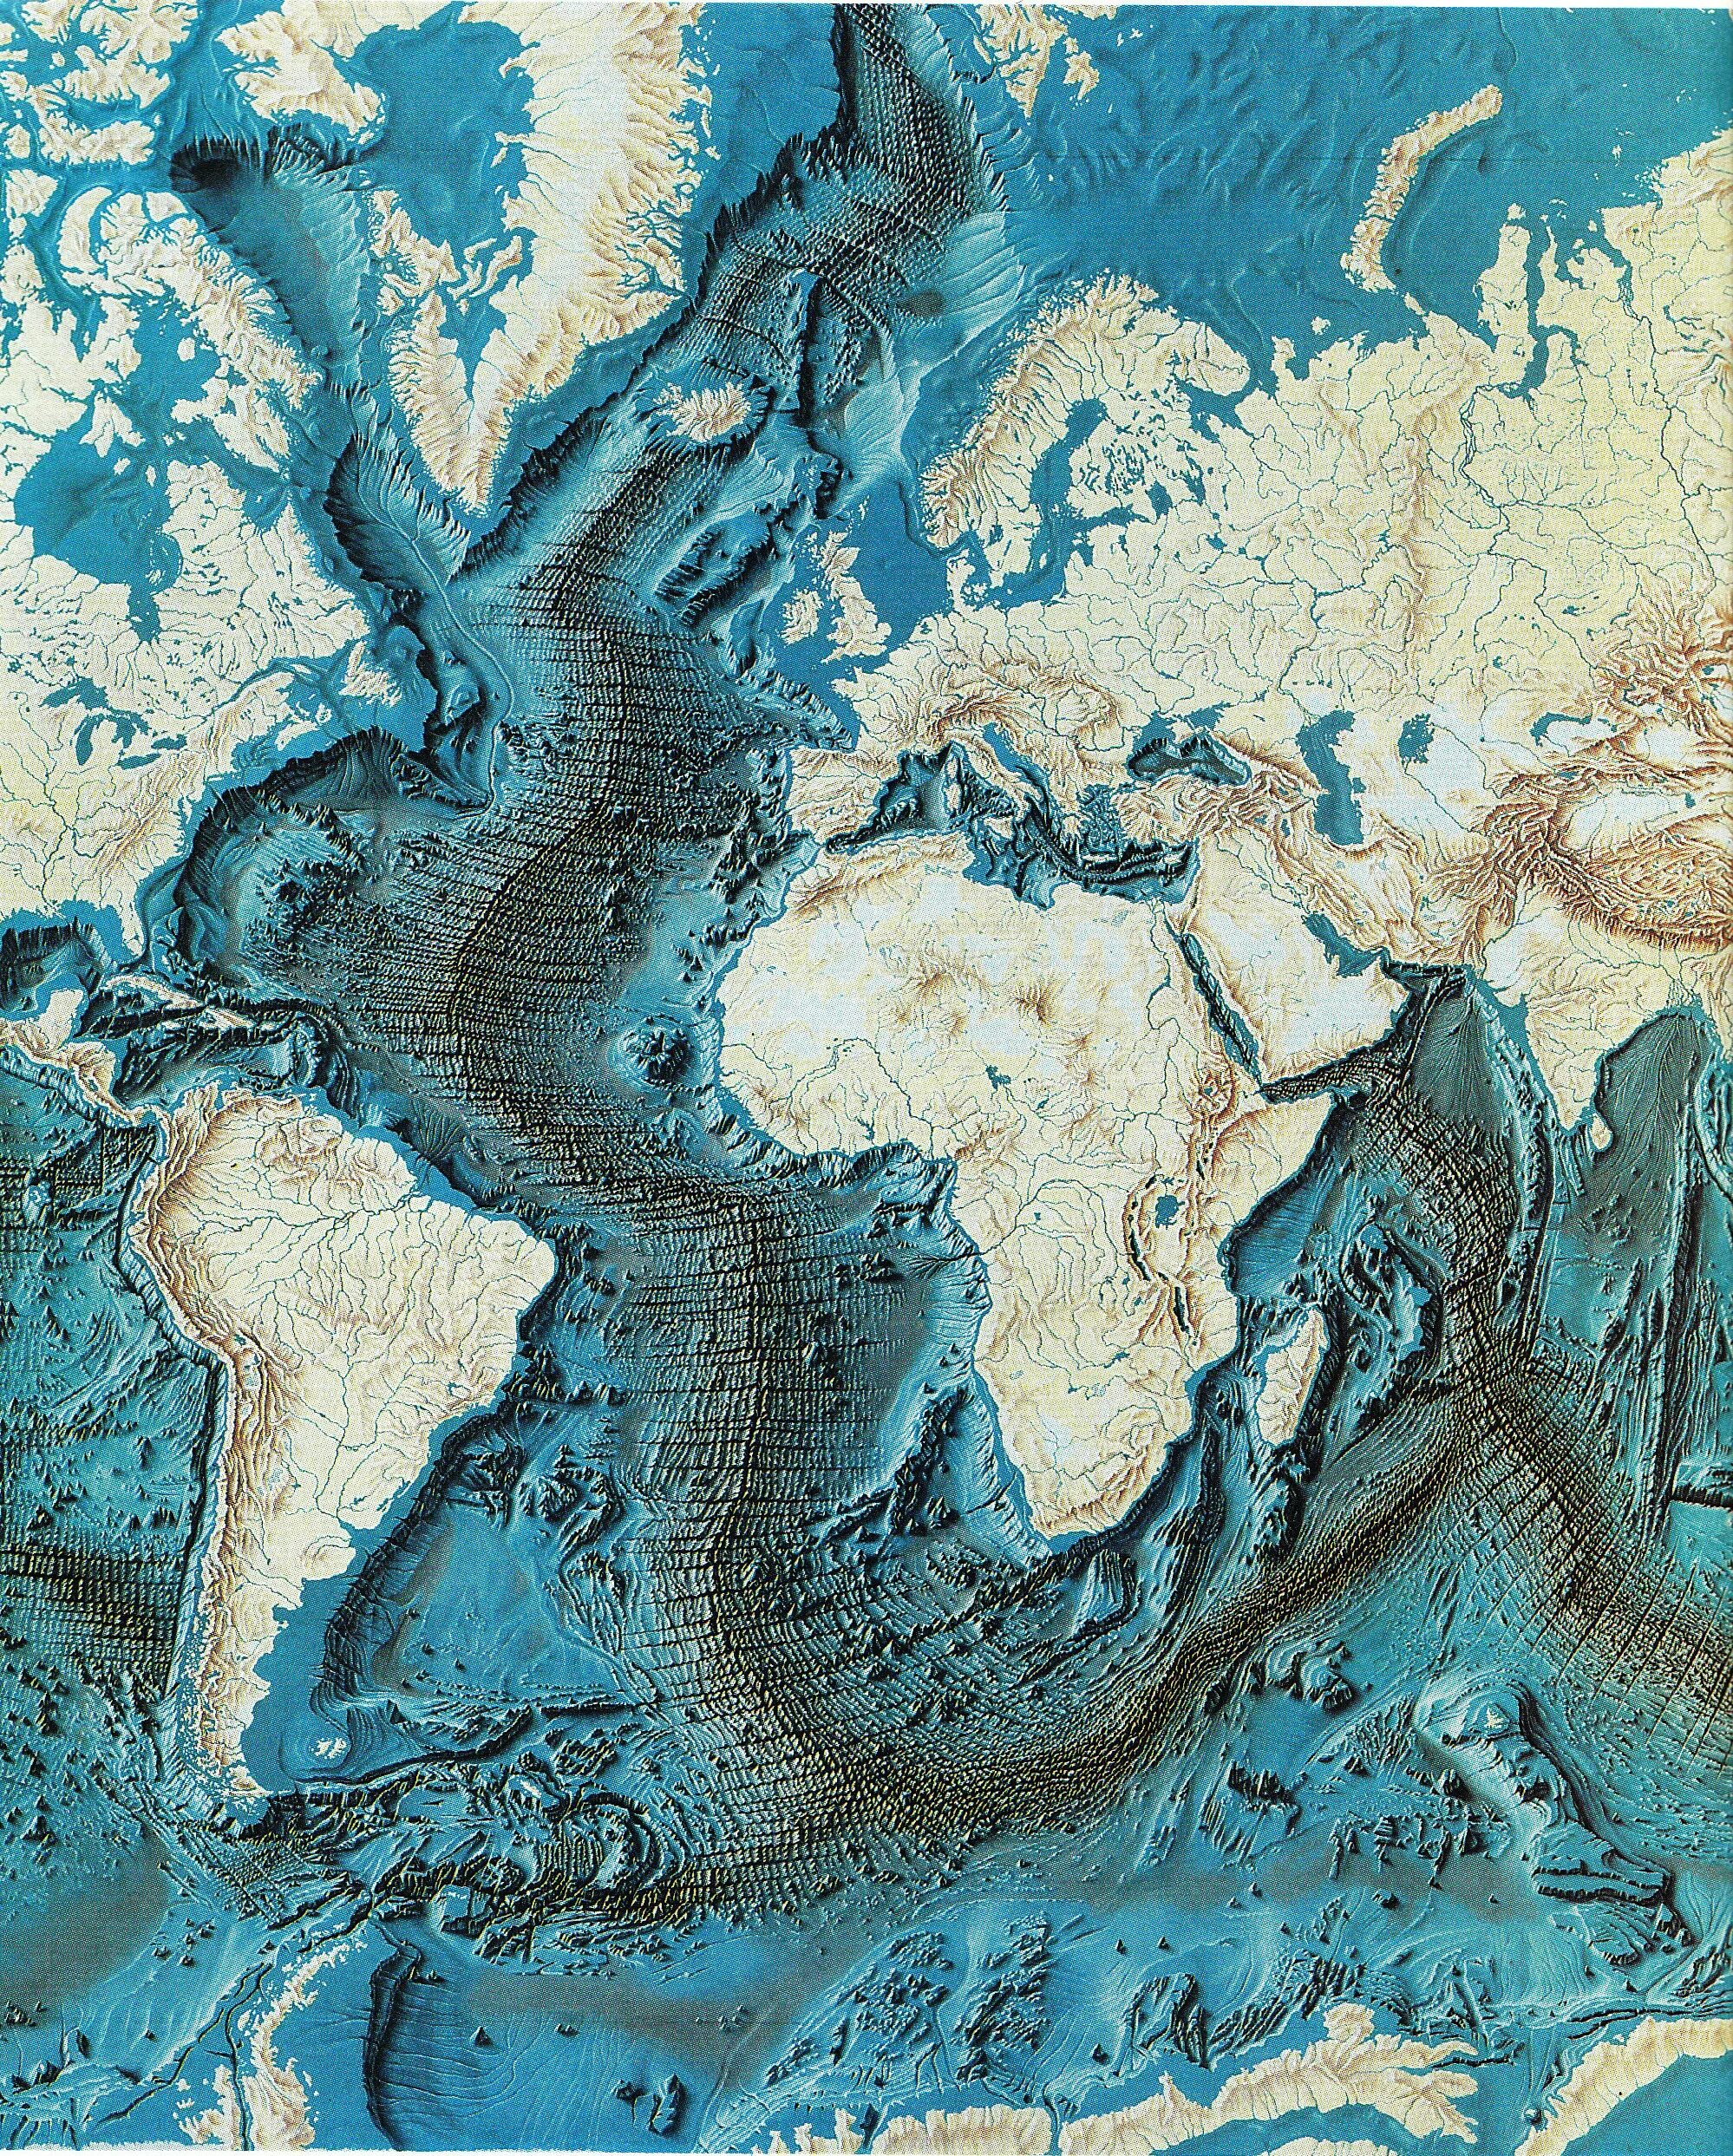 Карта дна мирового океана. Рельеф Атлантического океана. Карта дна Атлантического океана. Карта рельефа дна мирового океана. Зоны дна океана